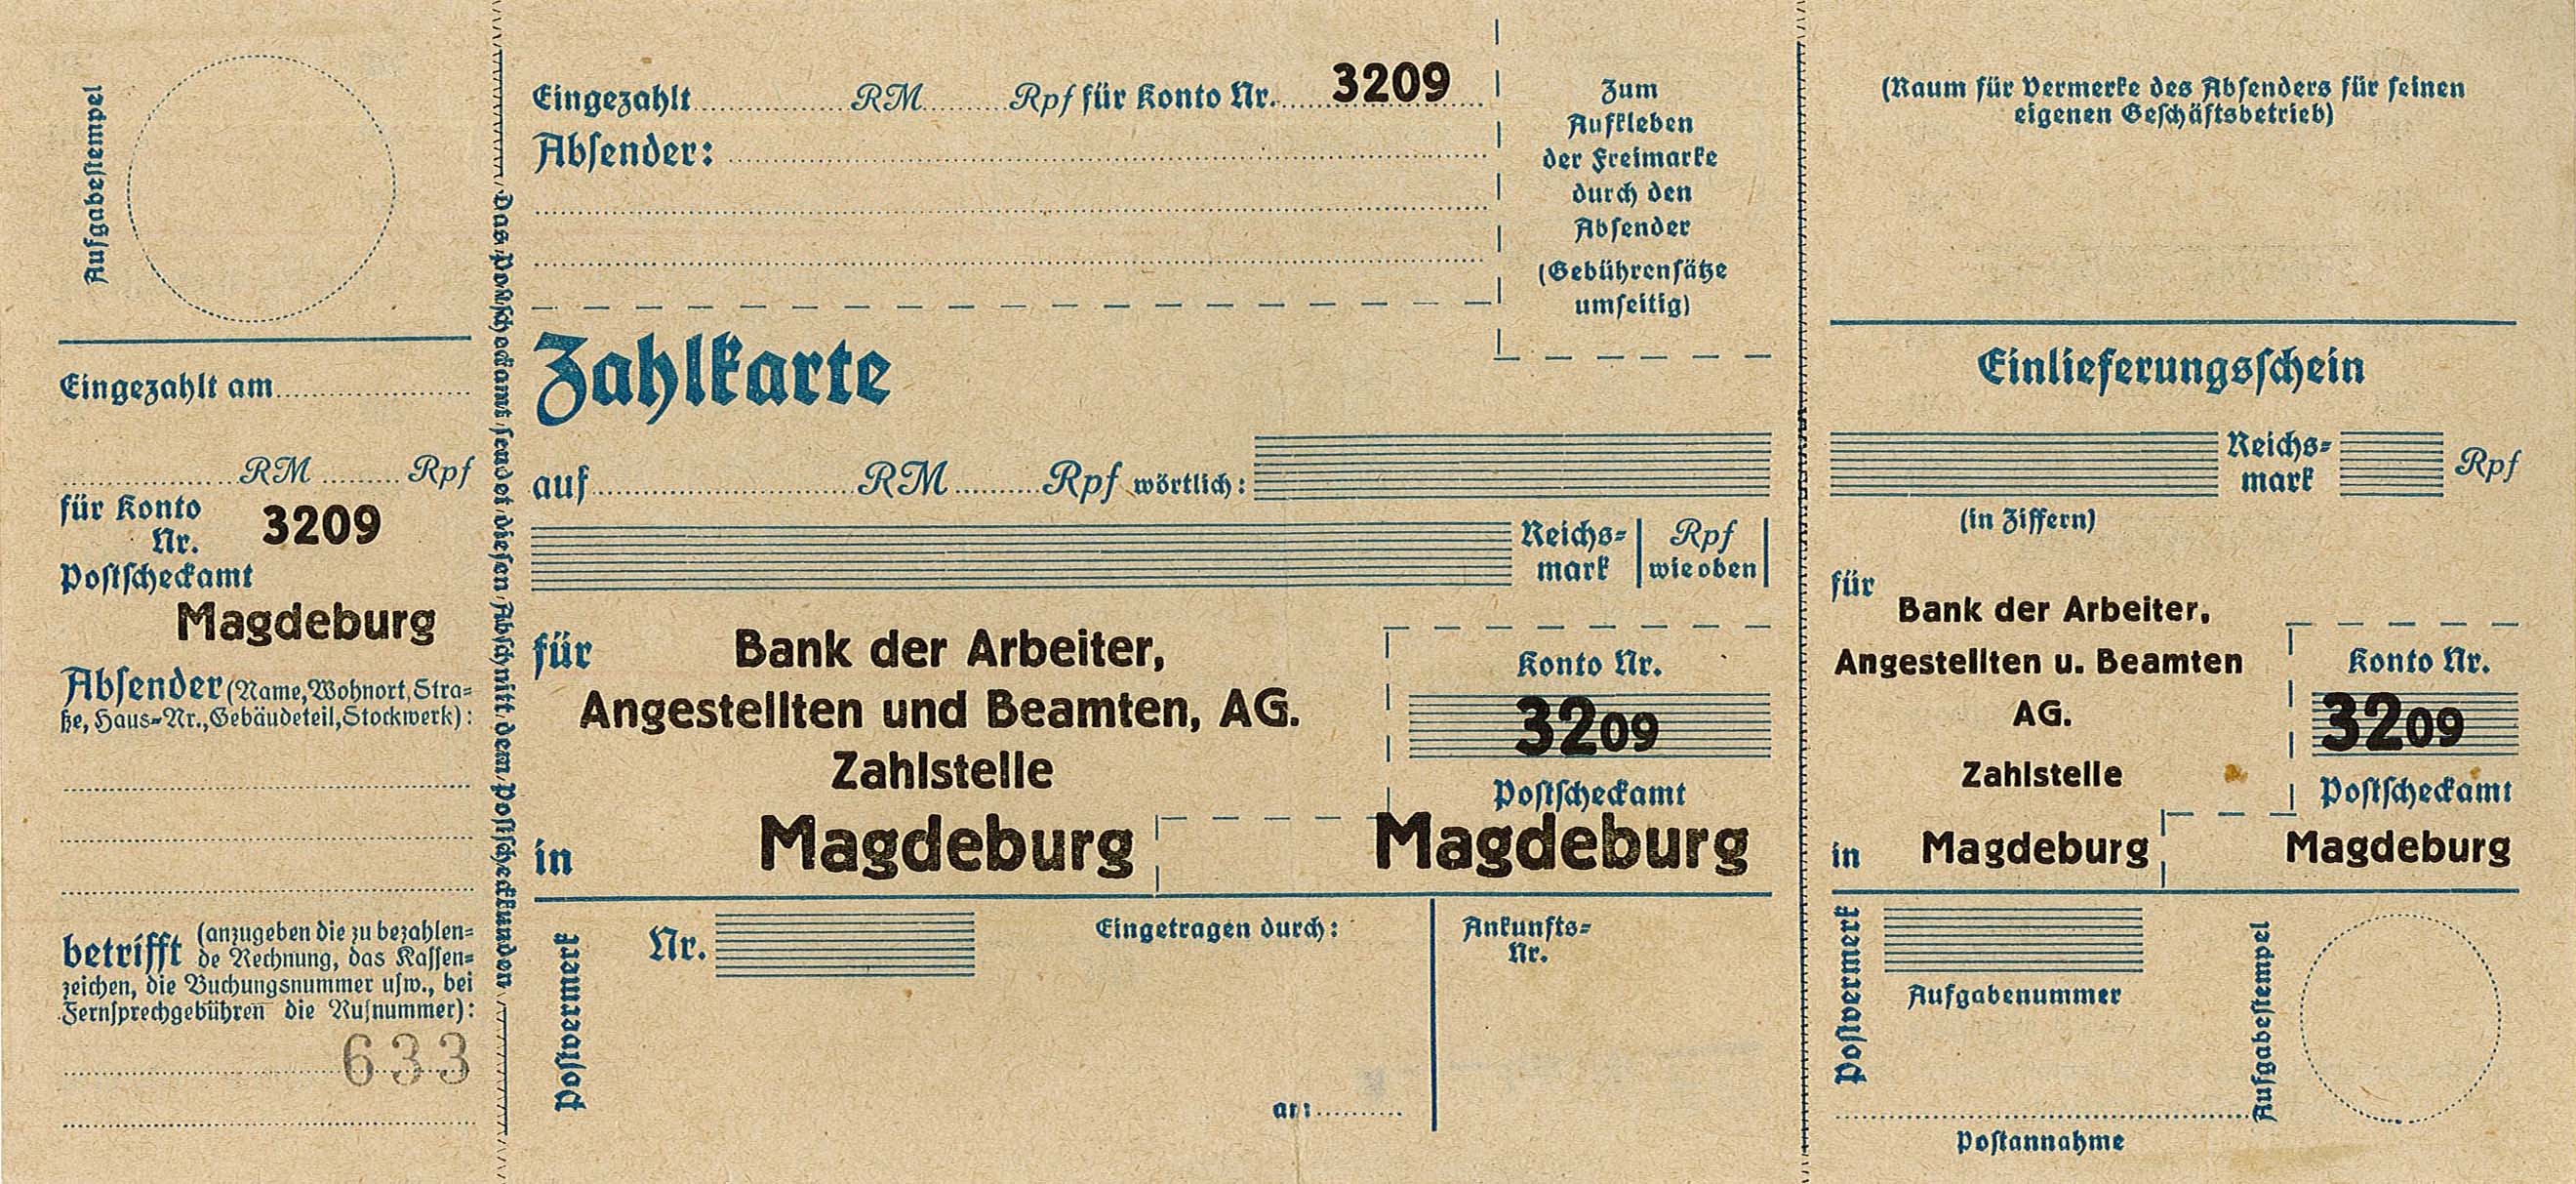 Zahlkarte für Bank der Arbeiter, Angestellten und Beamten AG, Magdeburg (Museum Wolmirstedt RR-F)